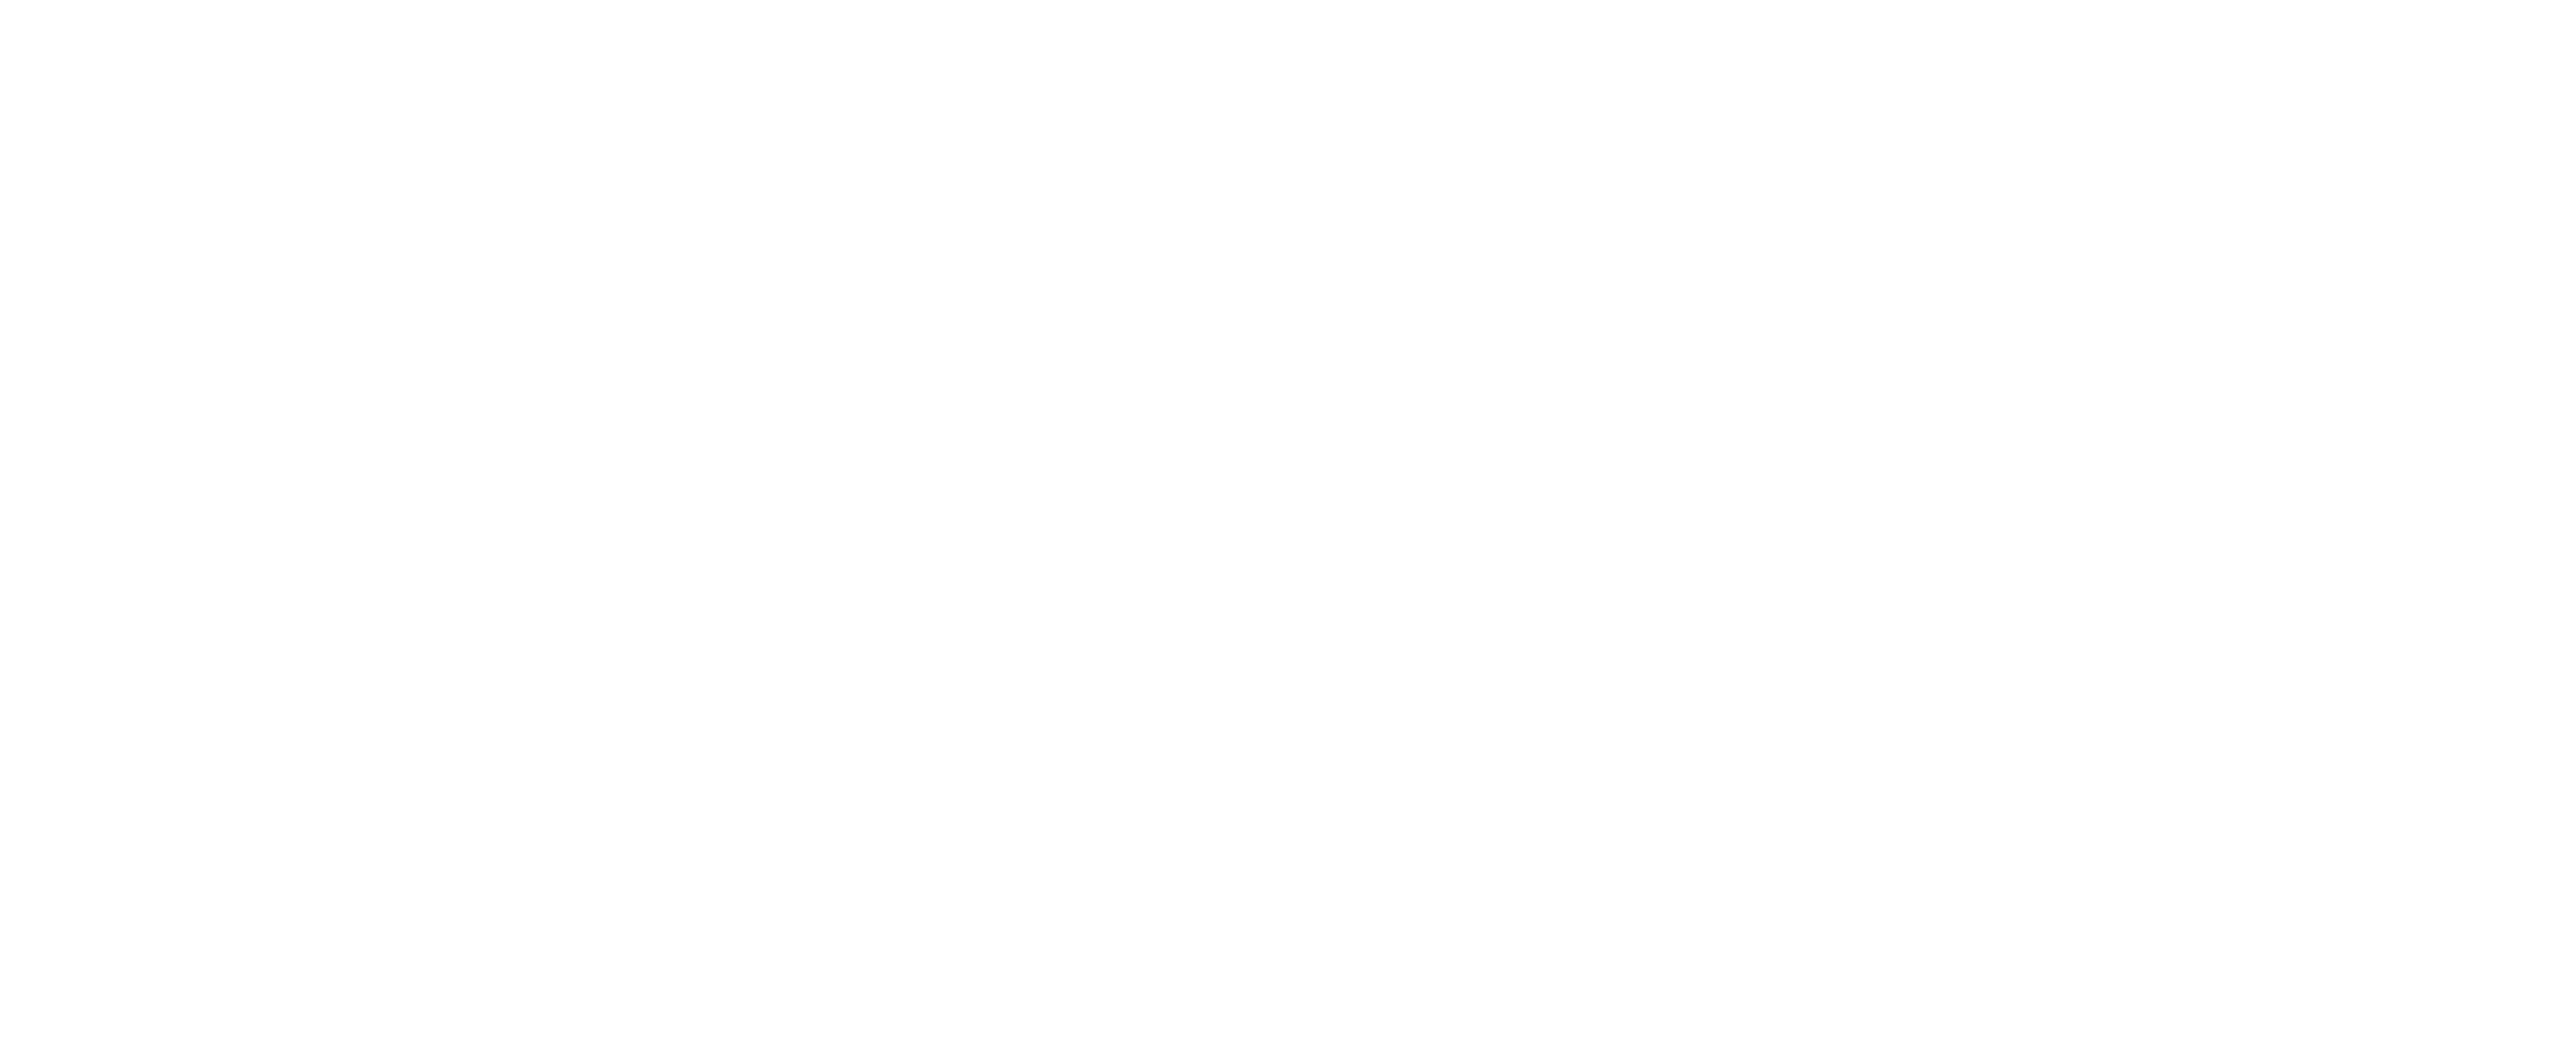 Female Tattooers